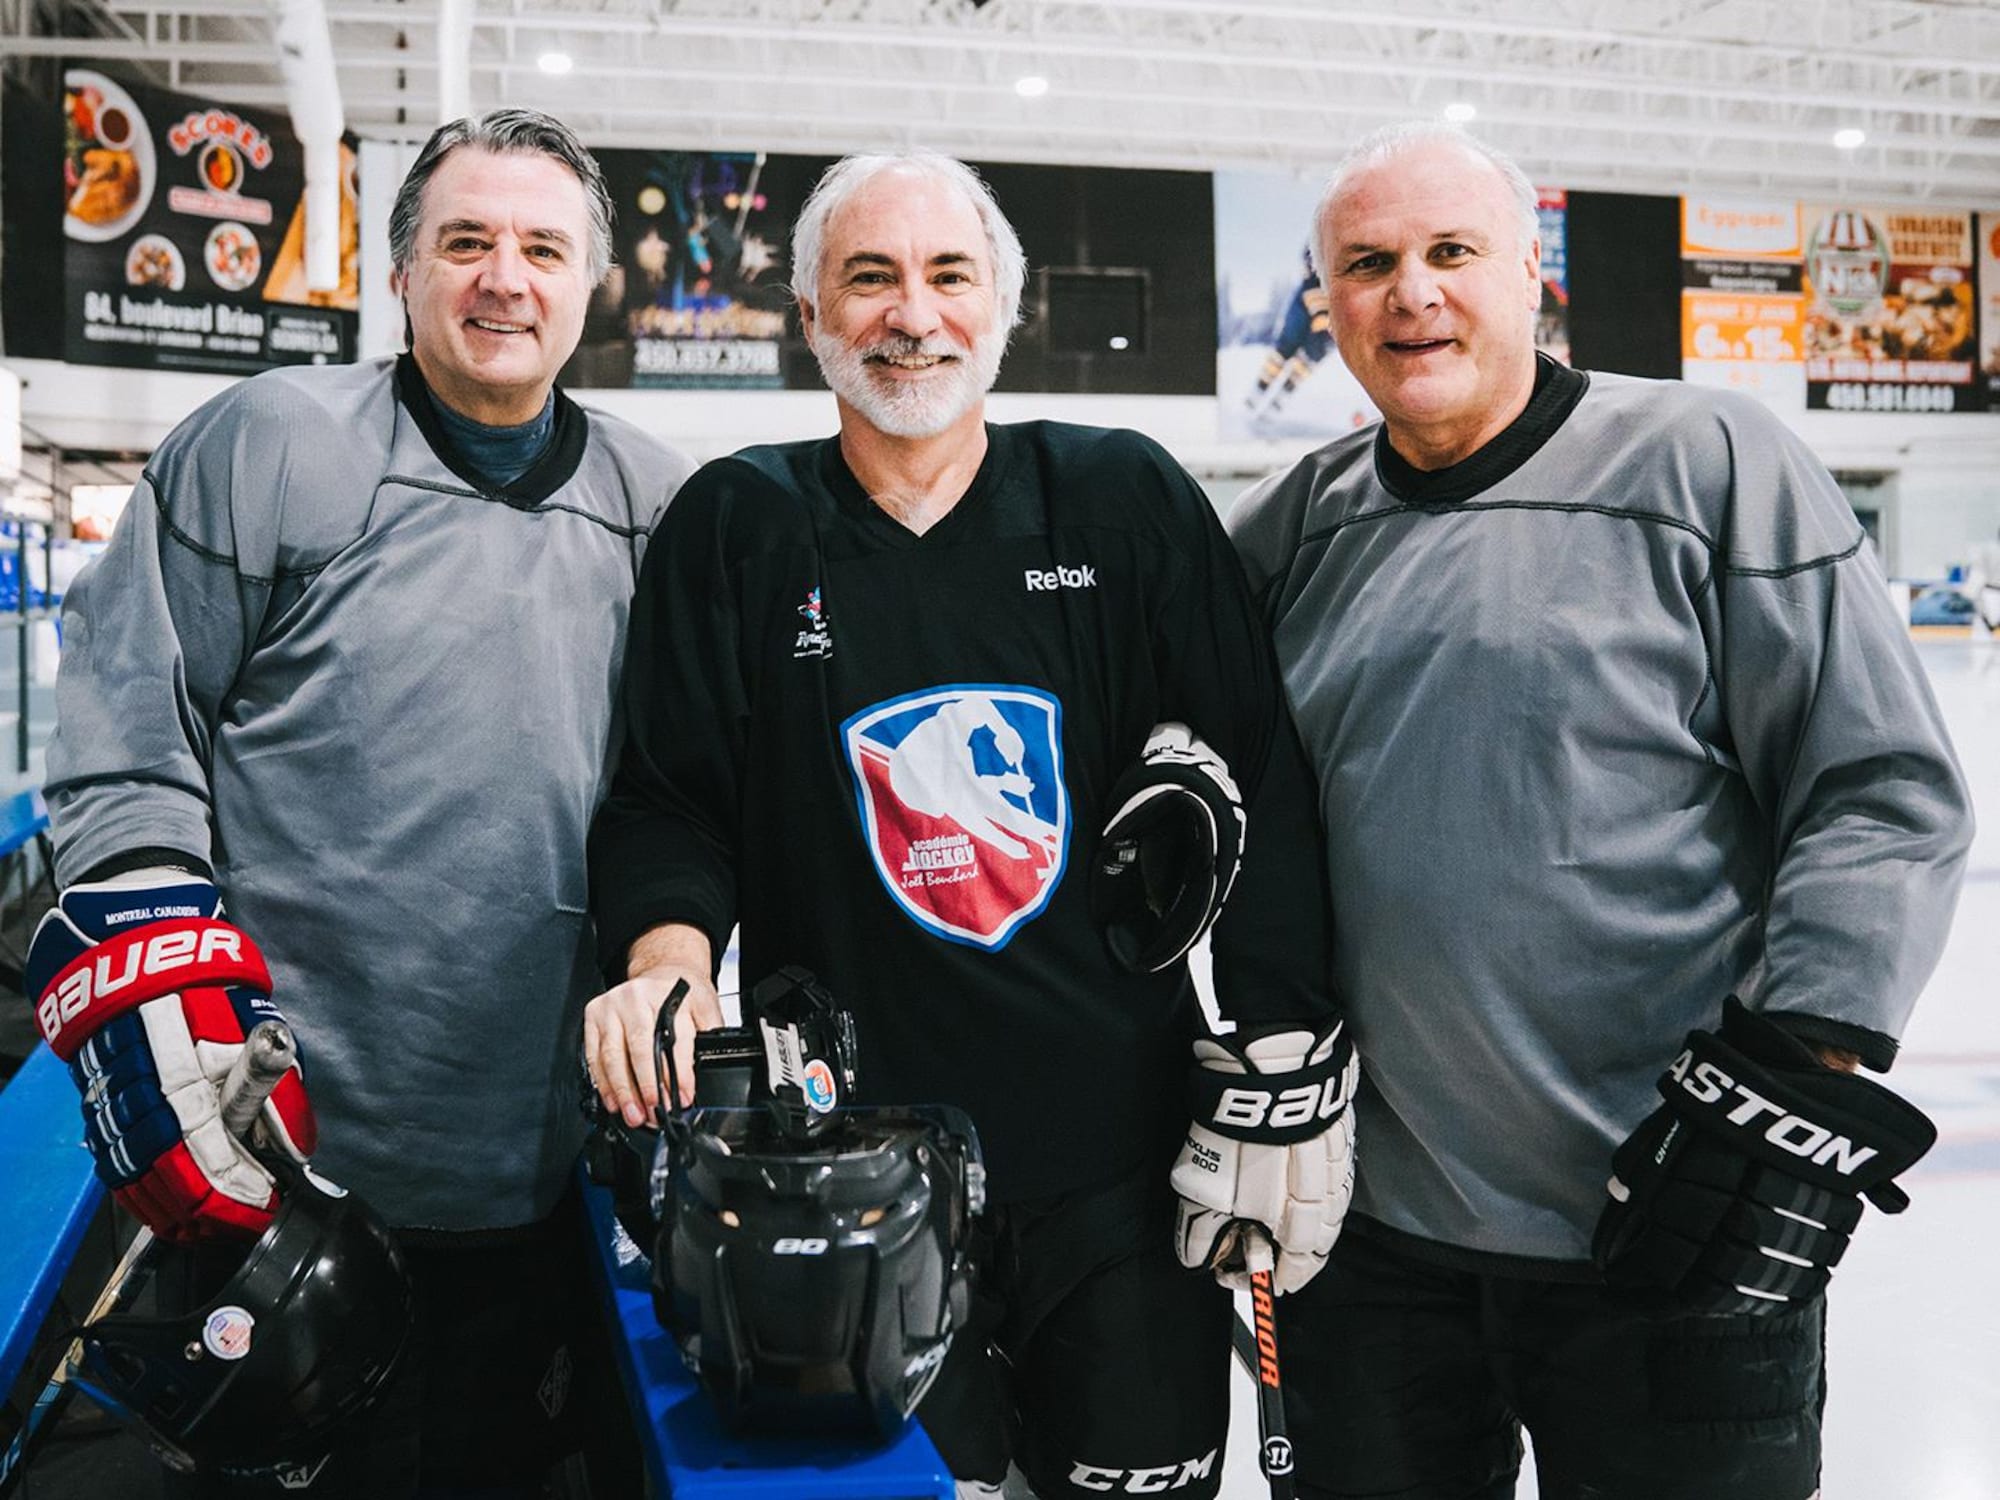 Trois hommes qui portent un uniforme de hockey regardent l'appareil photo en souriant.